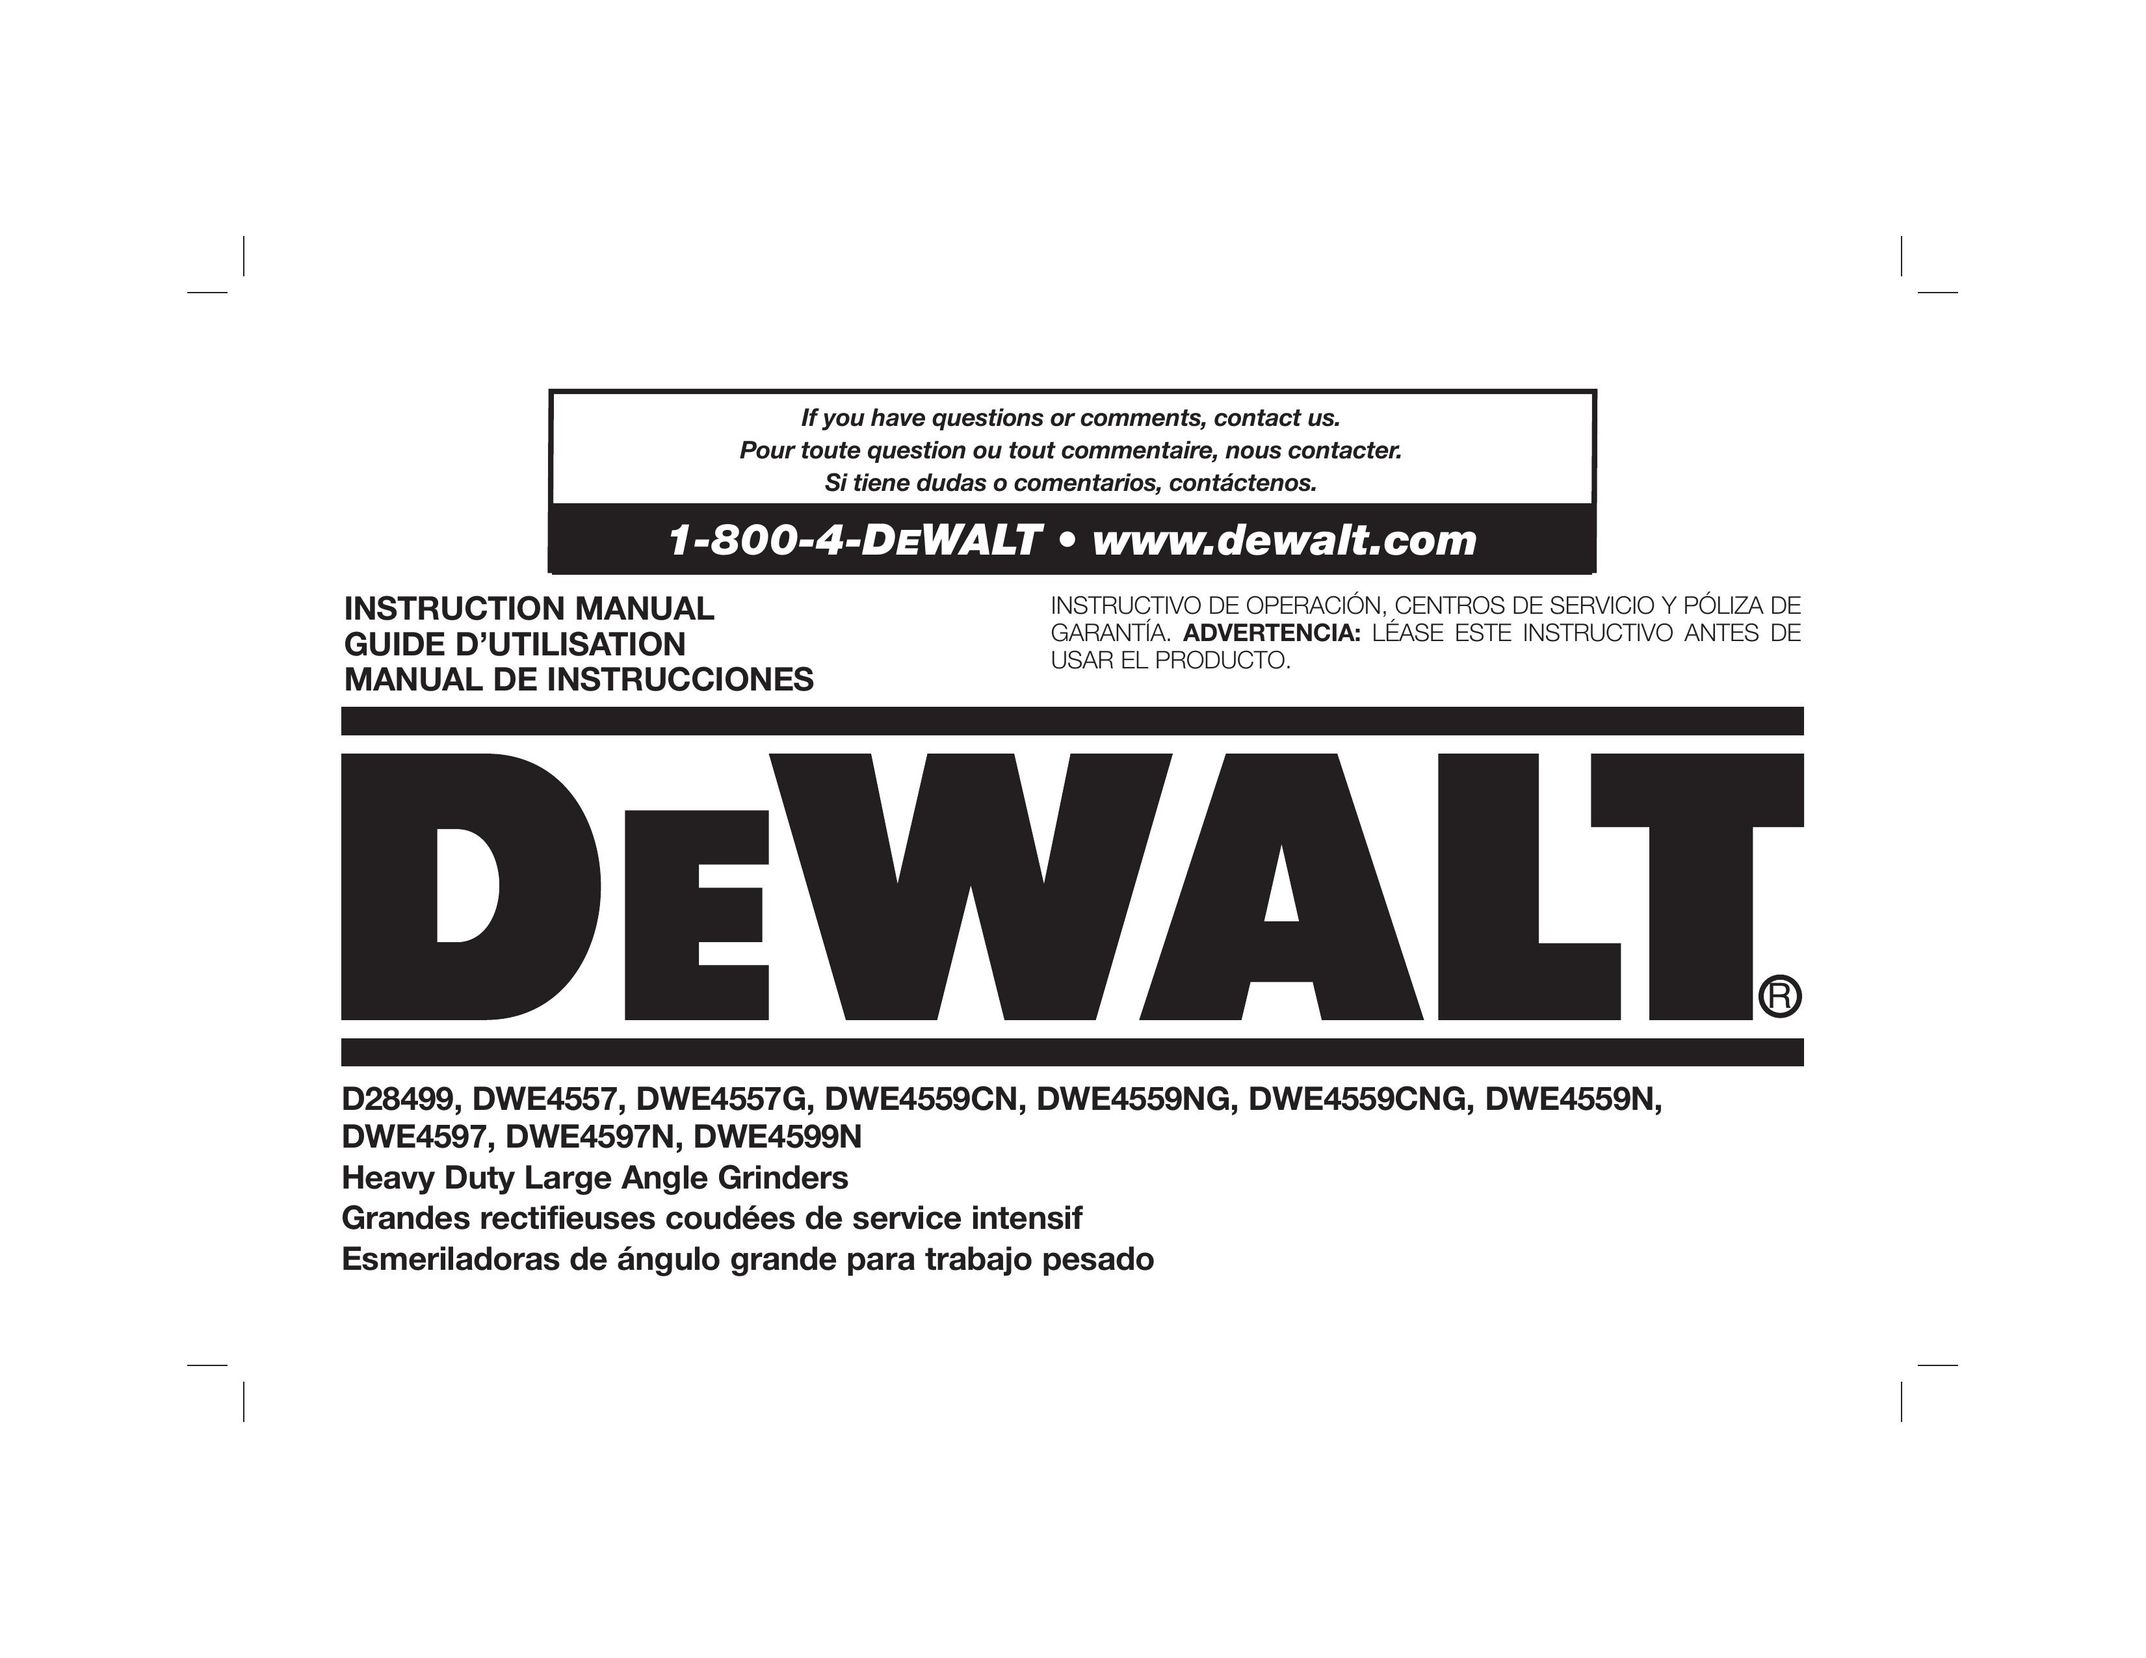 DeWalt DWE4599N Grinder User Manual